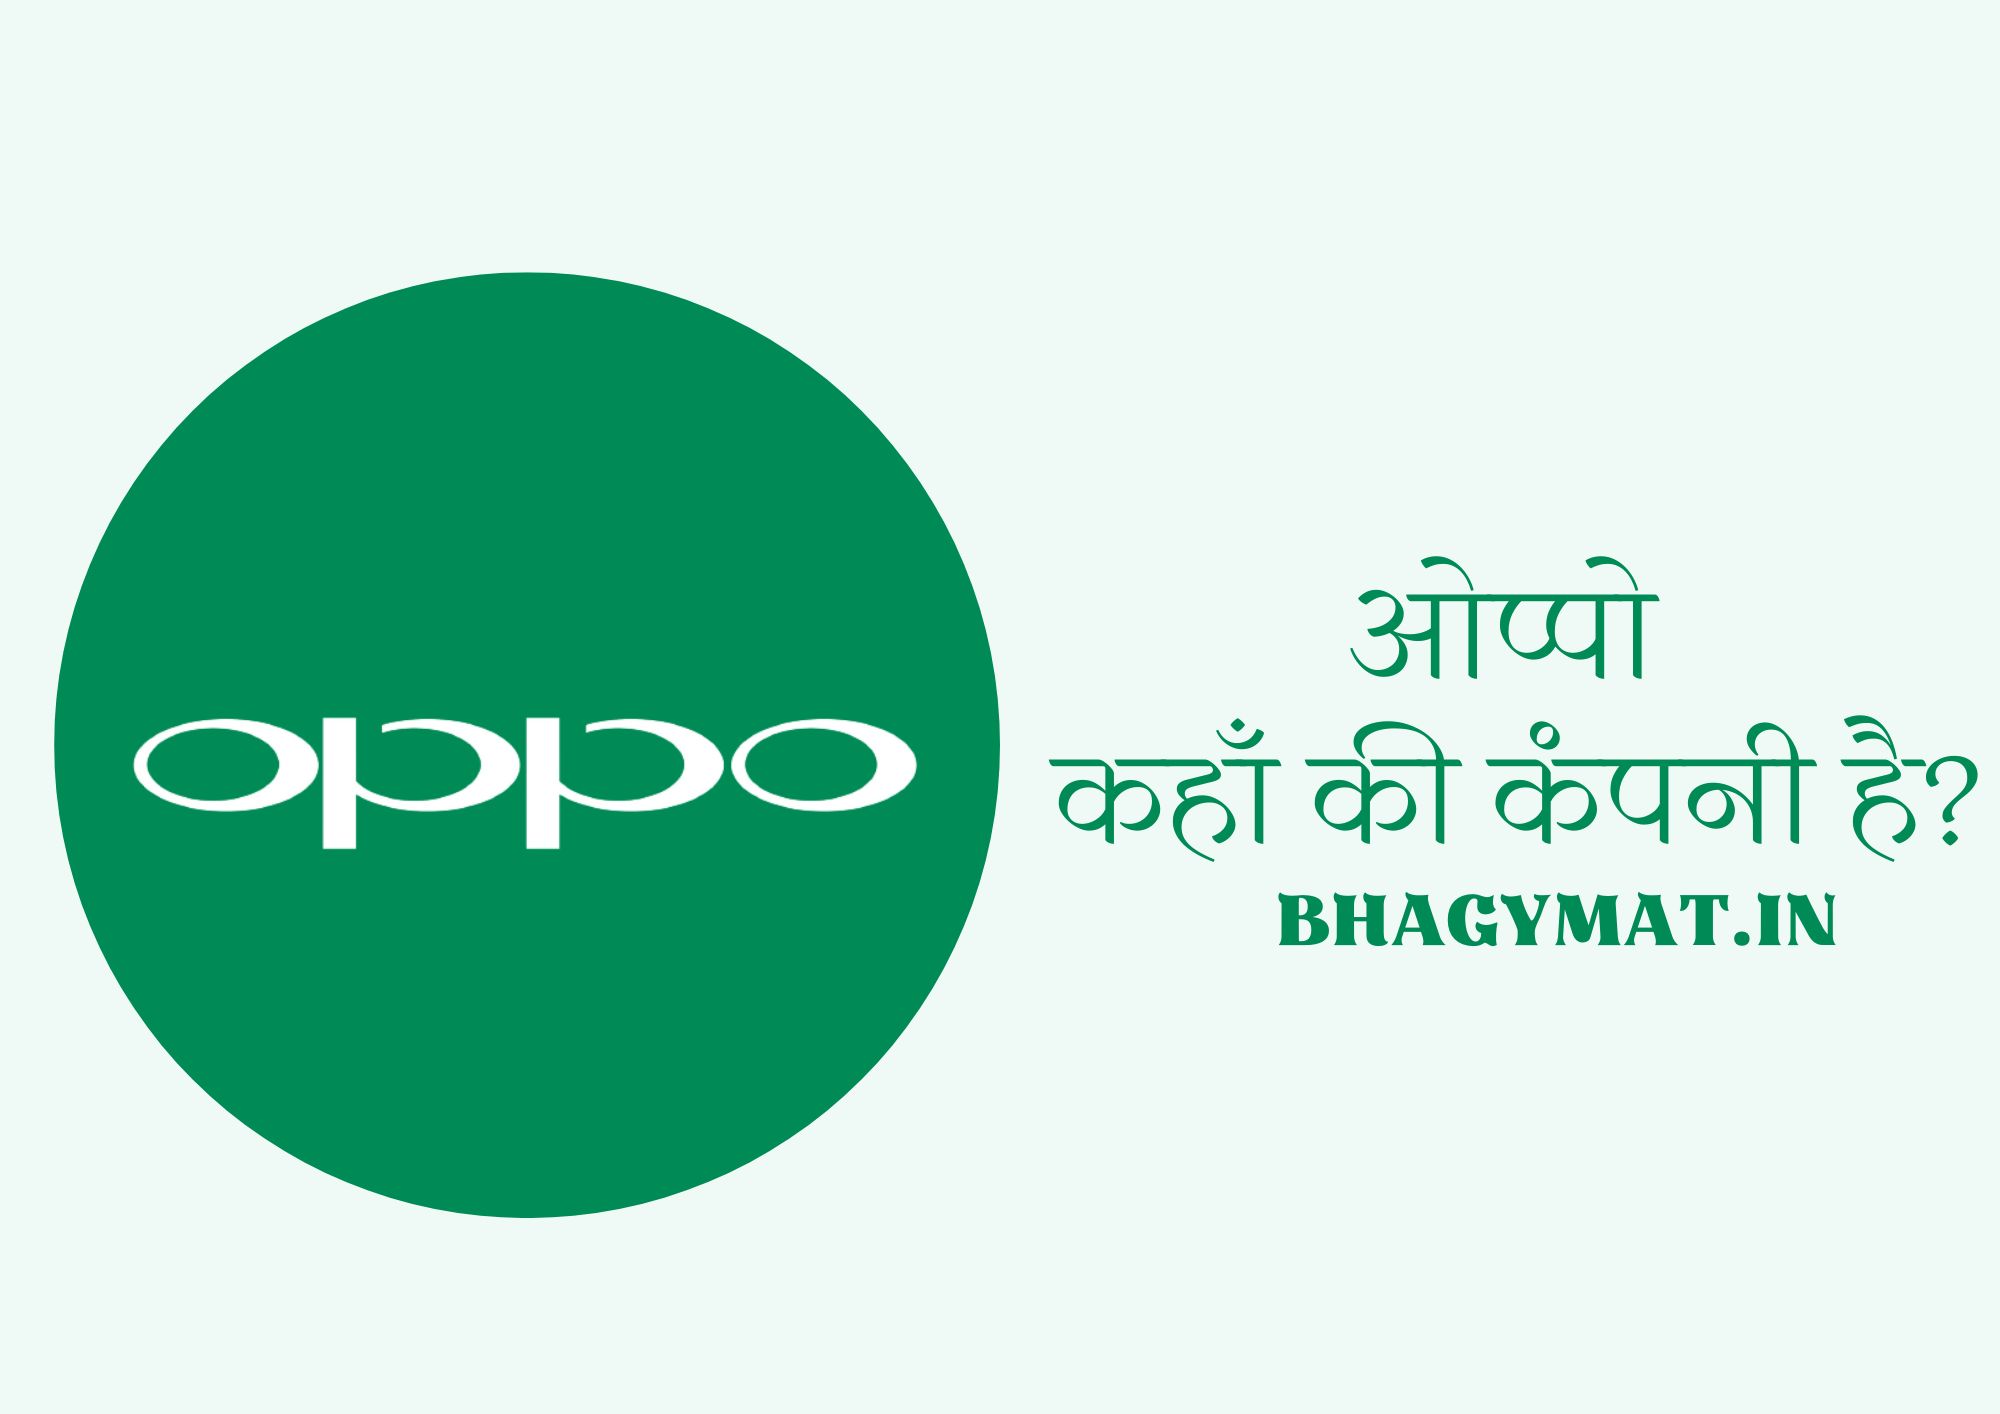 ओप्पो किस देश की कंपनी है? (Oppo Kis Desh Ki Company Hai) - Oppo Company Kis Desh Ki Hai - Oppo Kaha Ki Company Hai